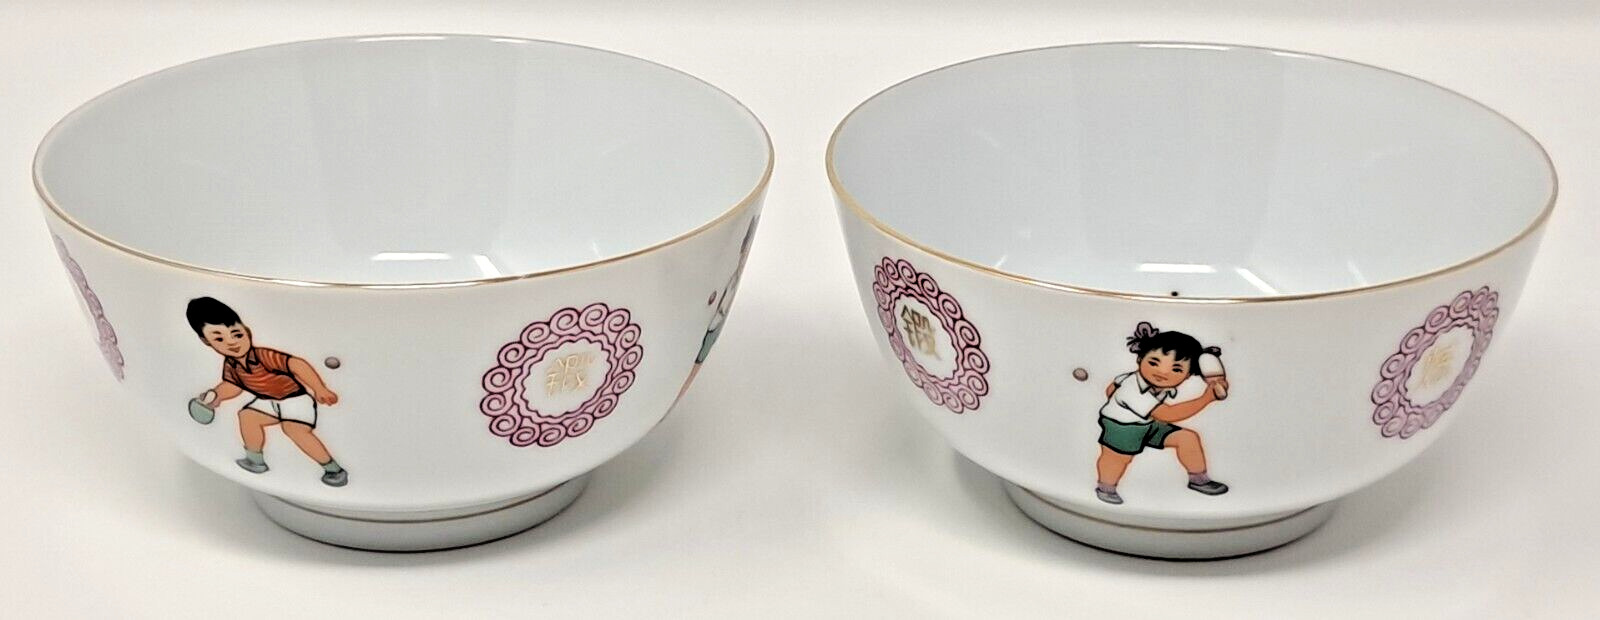 Pair of Liling China Ping Pong Kids Rice Bowl boy girl porcelain ceramic vintage